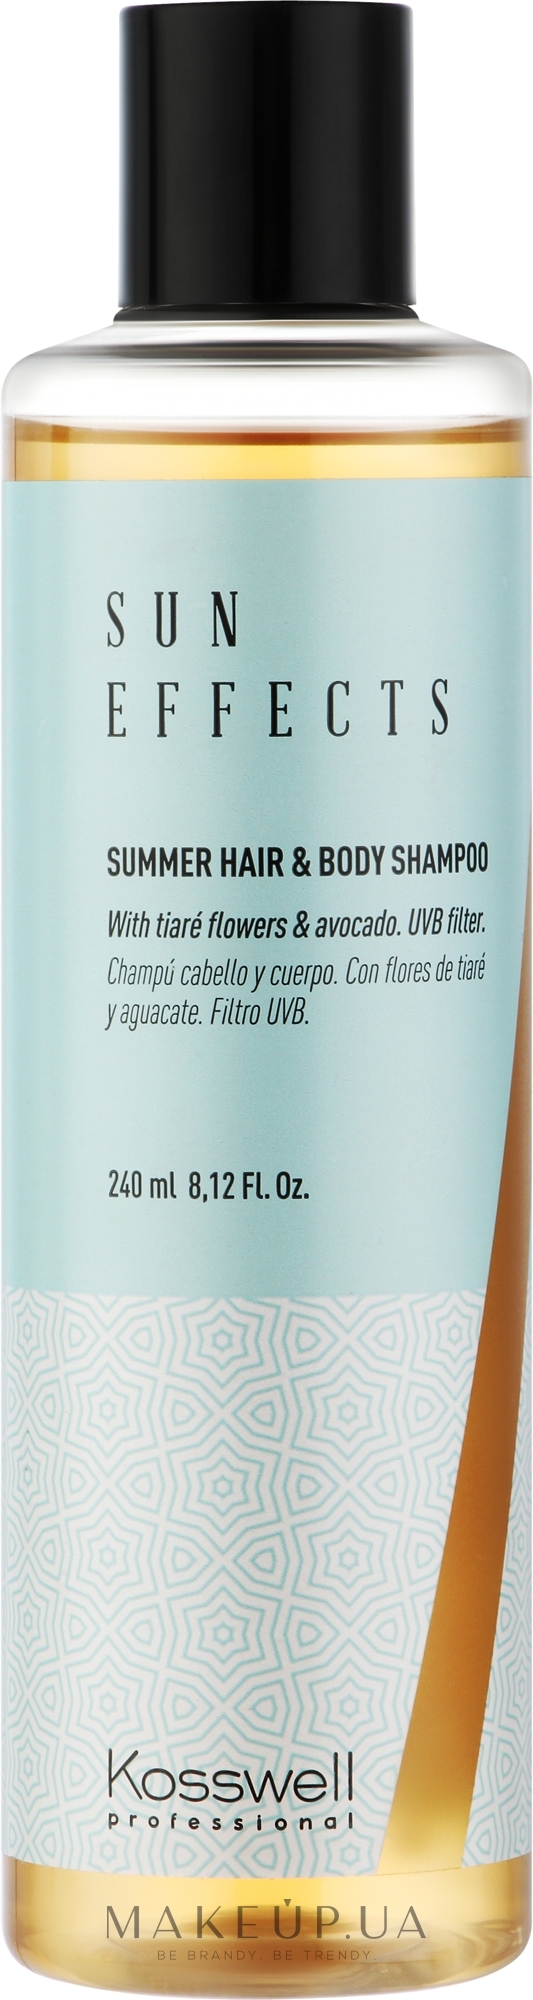 Шампунь для захисту волосся й тіла від сонця - Kosswell Professional Sun Effects Summer Hair & Body Shampoo — фото 240ml